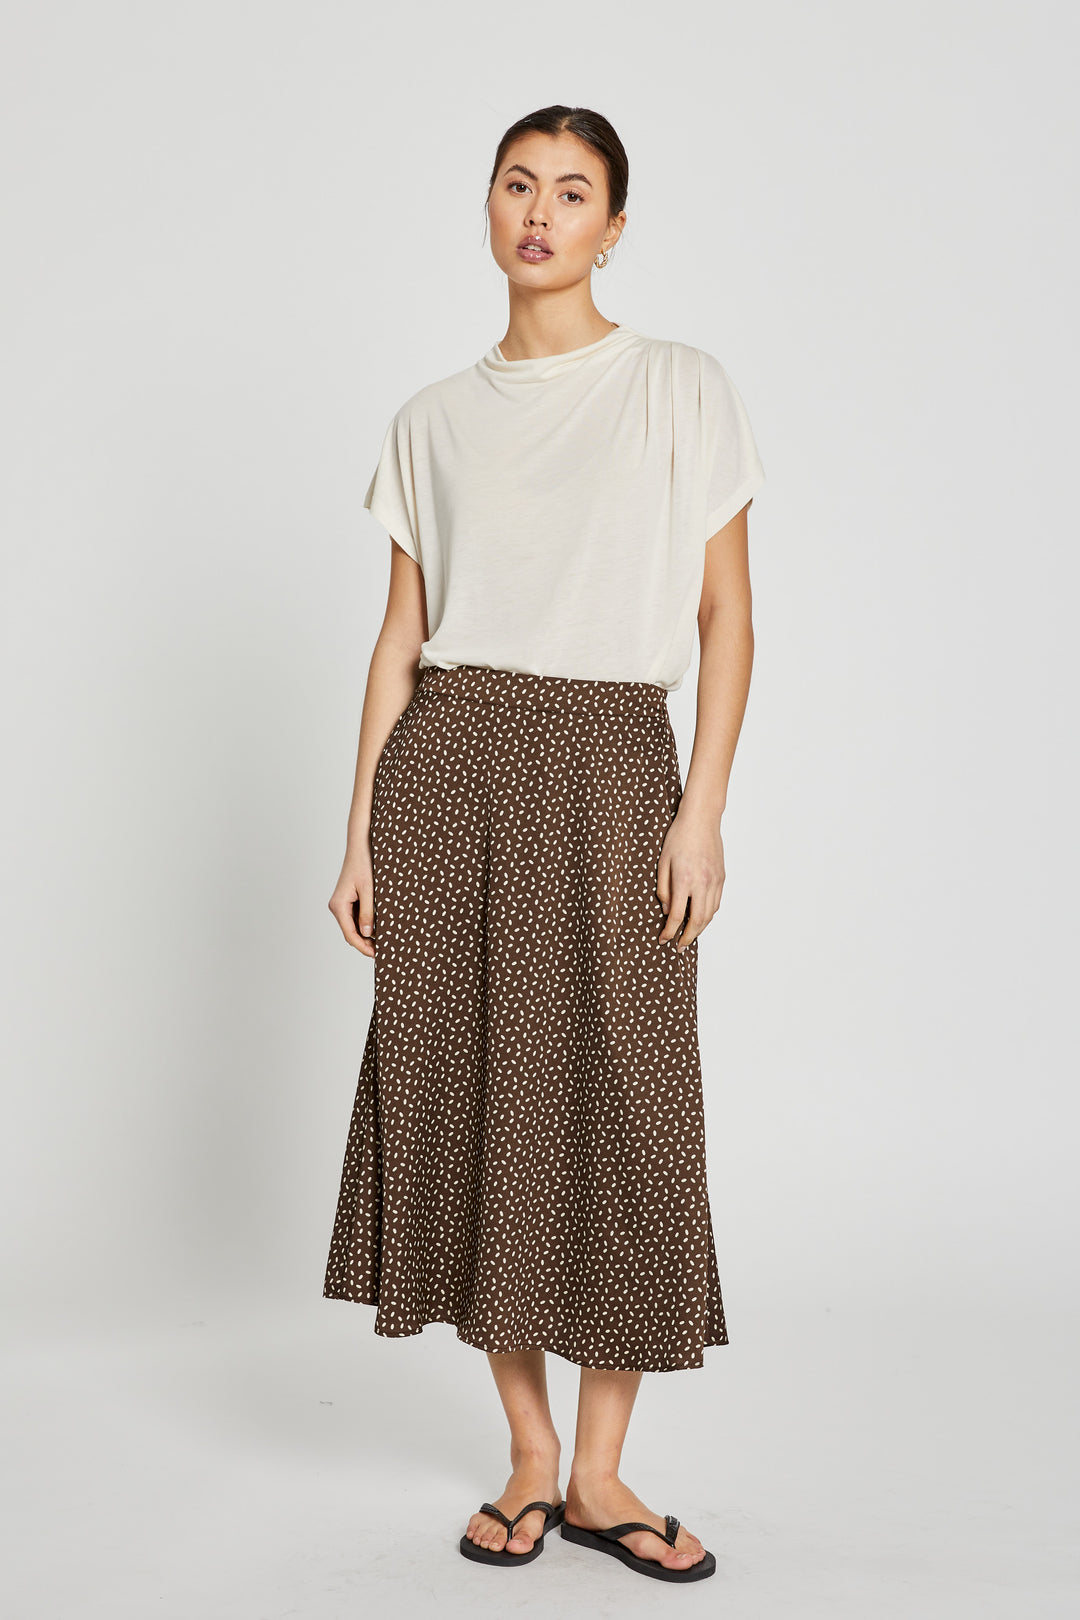 Bruuns Bazaar Women AcaciaBBAmattas skirt Skirt Brown/cream dot print